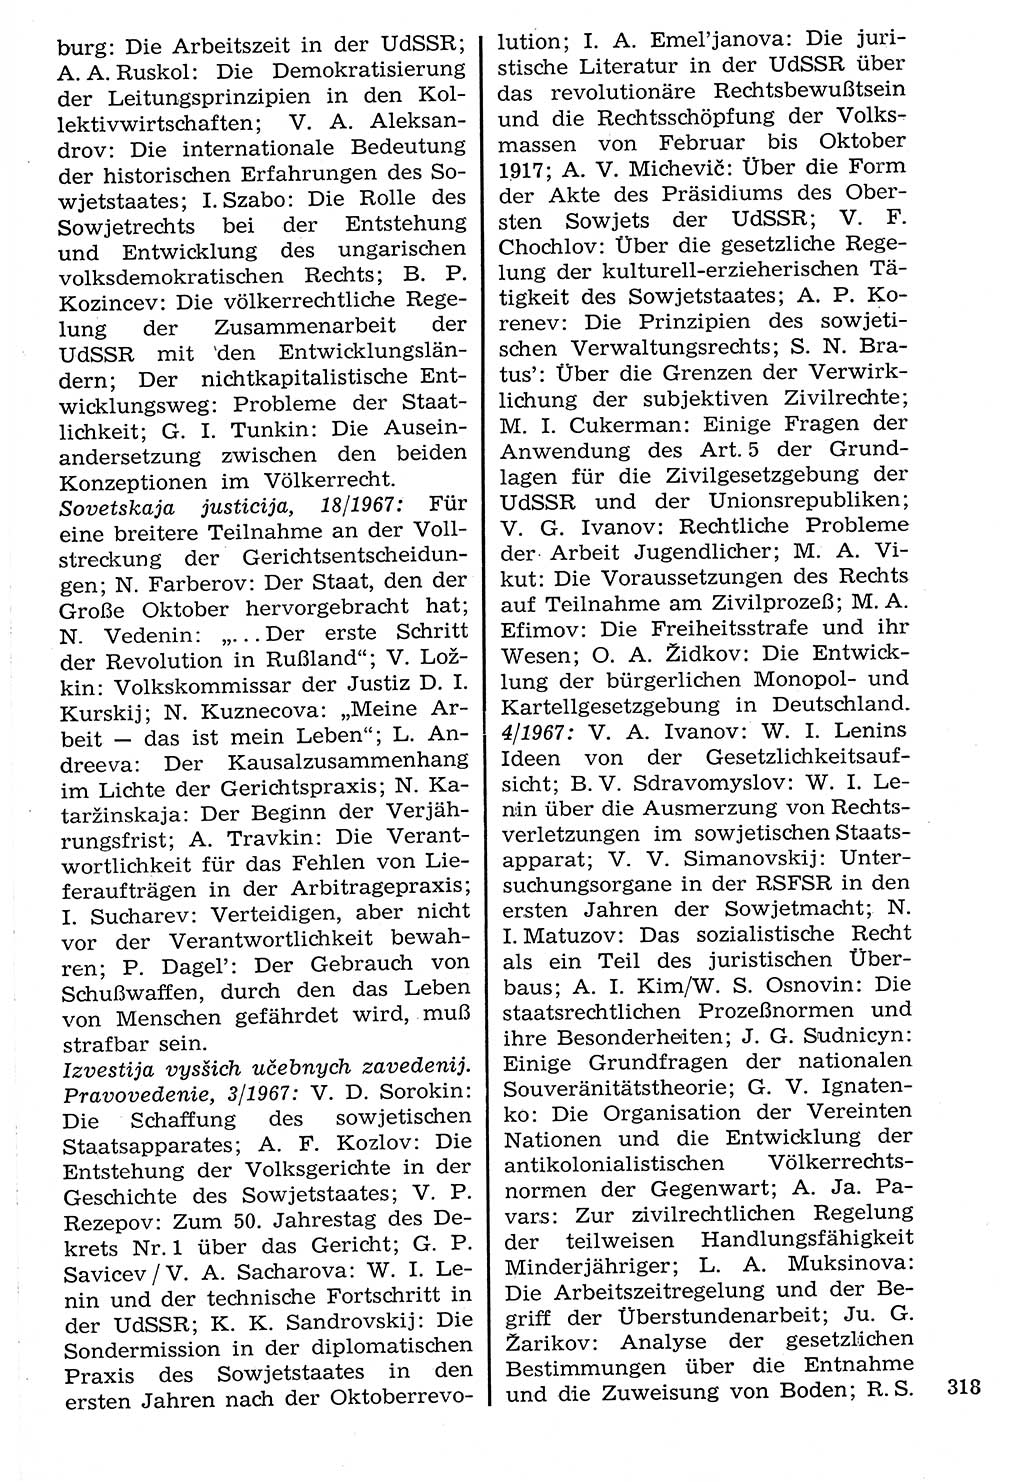 Staat und Recht (StuR), 17. Jahrgang [Deutsche Demokratische Republik (DDR)] 1968, Seite 318 (StuR DDR 1968, S. 318)